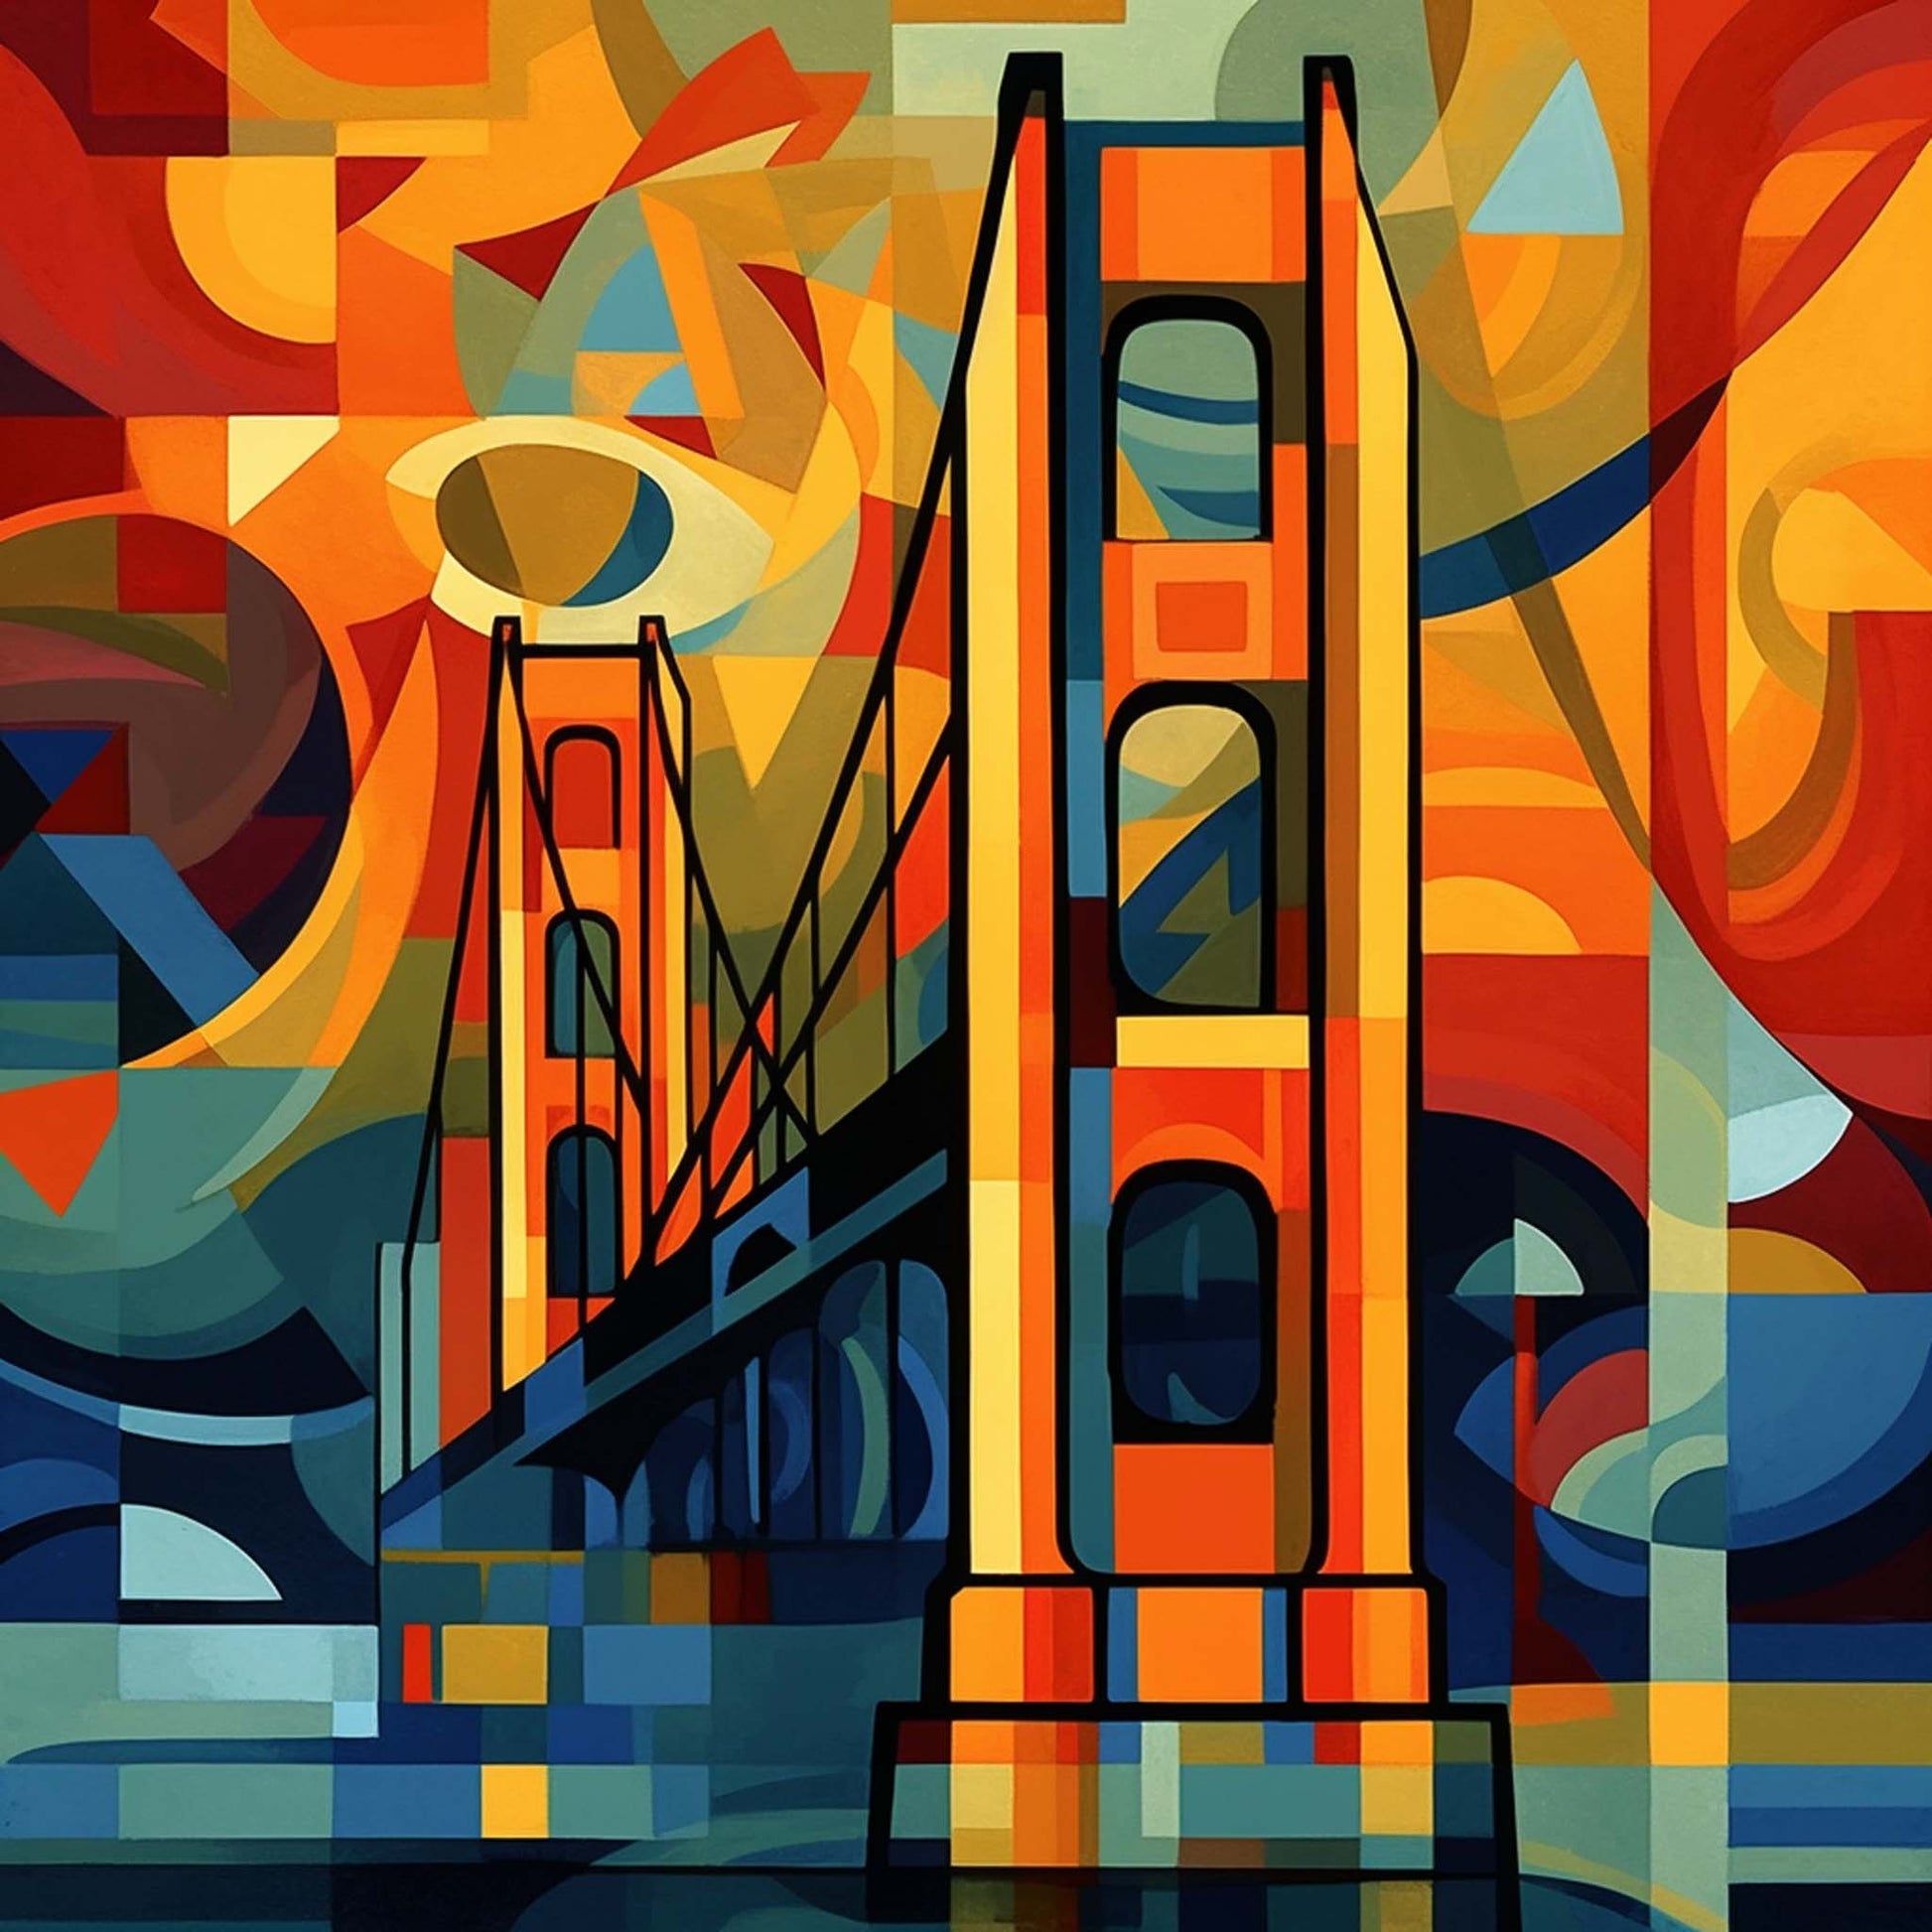 Urbanisto - San Fransisco Bridge Golden Gate Bridge - Wandbild in der Stilrichtung des Expressionismus